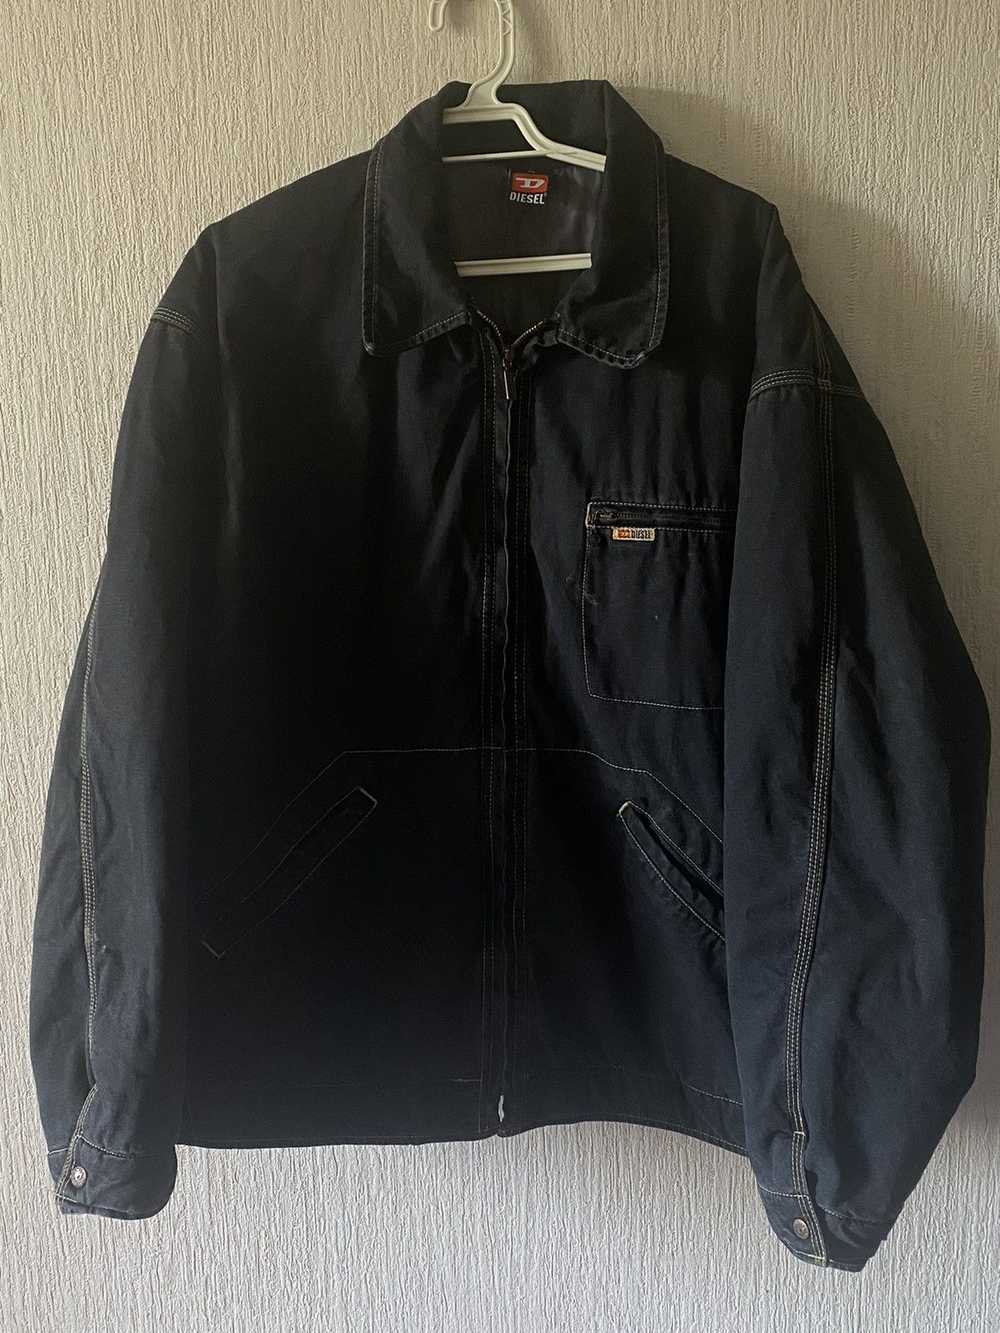 1990x Clothing × Diesel × Retro Jacket Vintage Re… - image 1